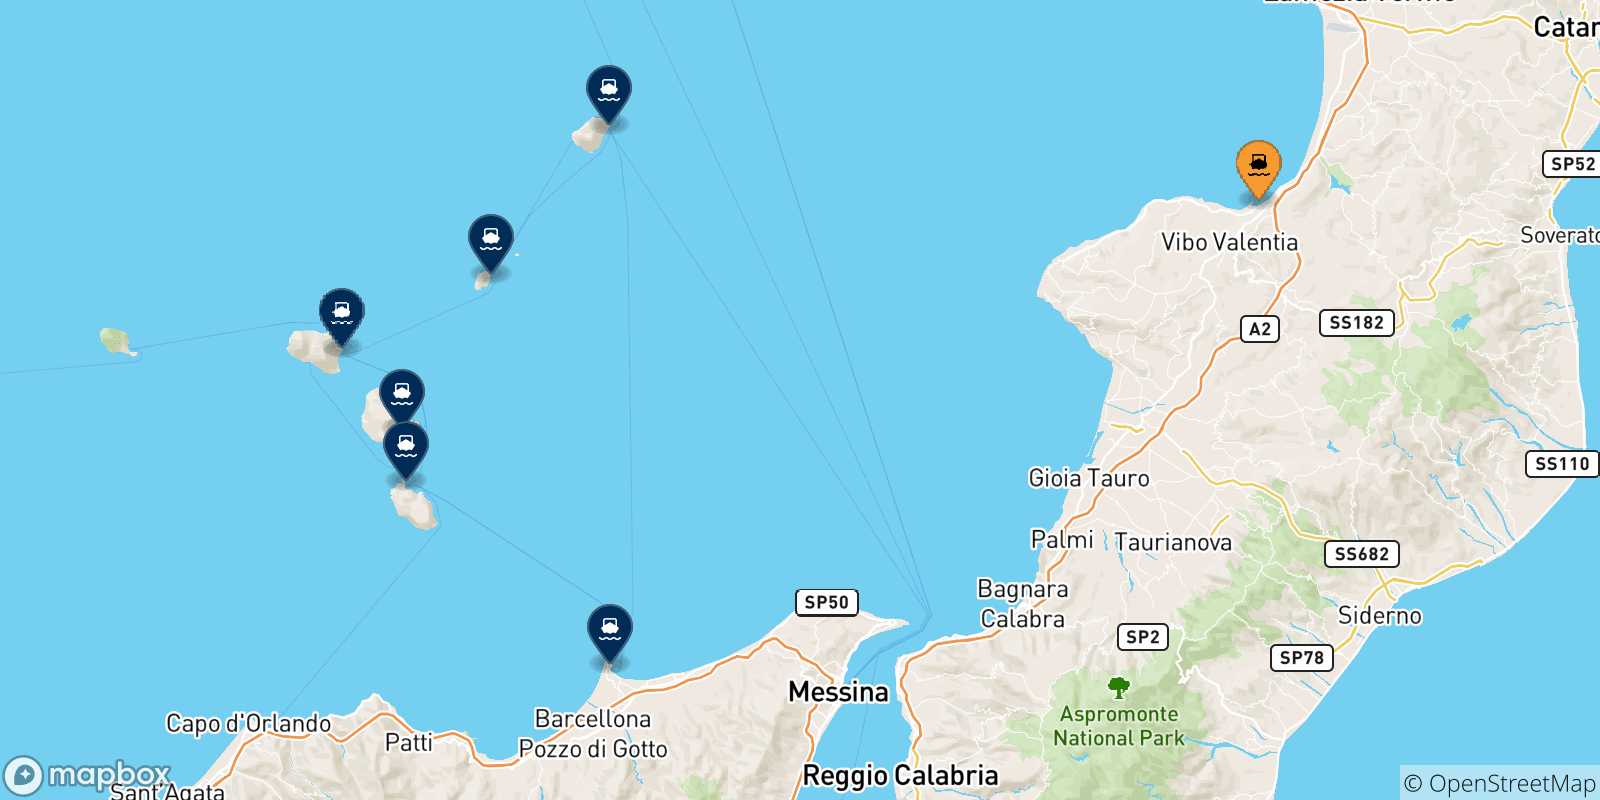 Carte des traversées possibles entre Vibo Valentia et l'Italie